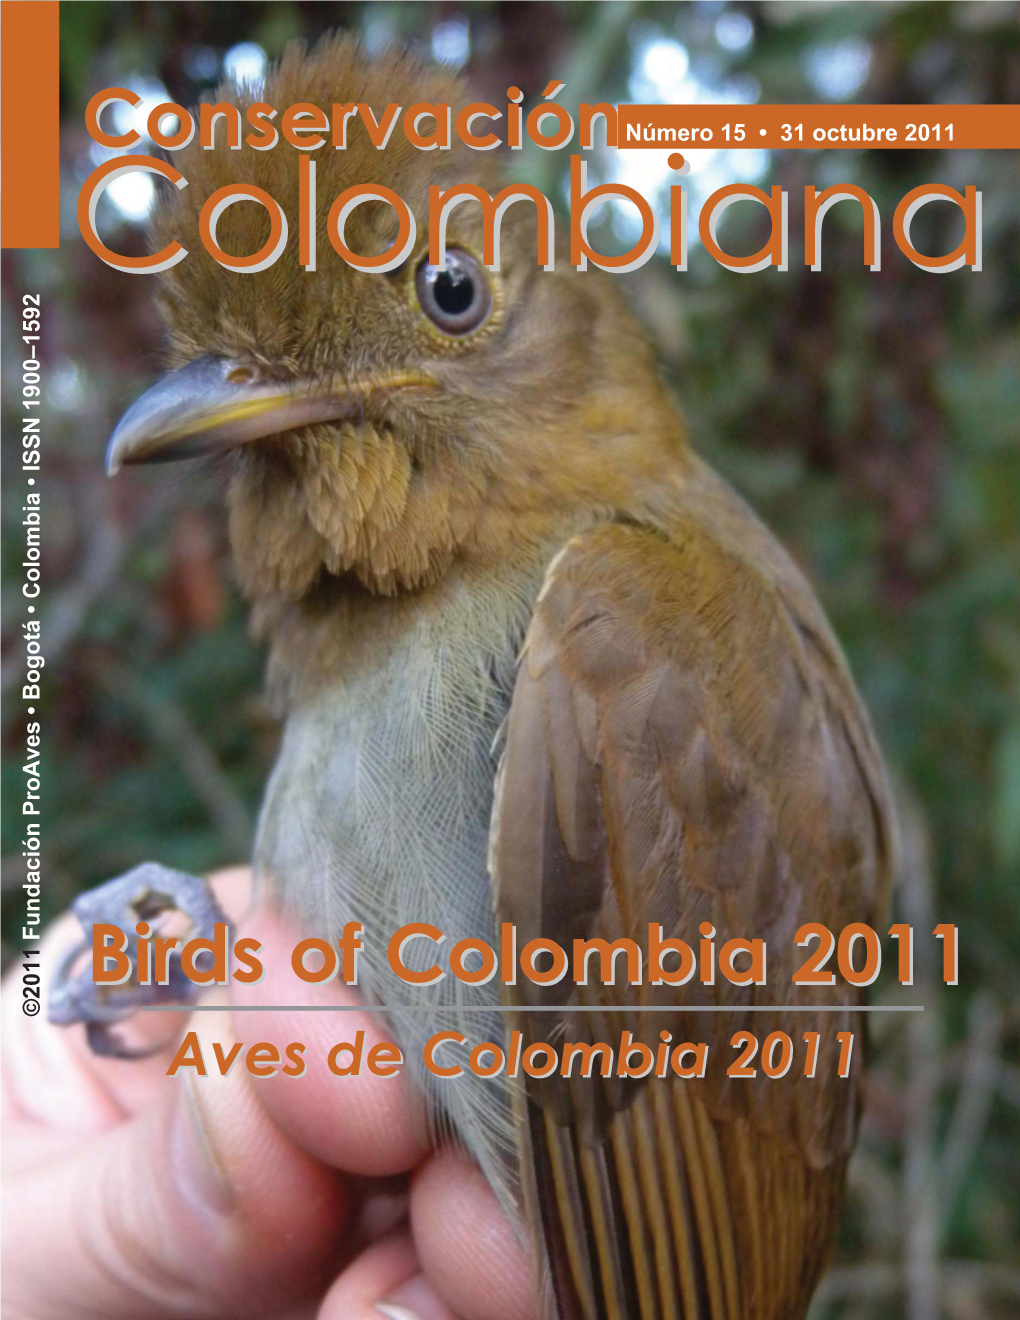 Conservación Birds of Colombia 2011